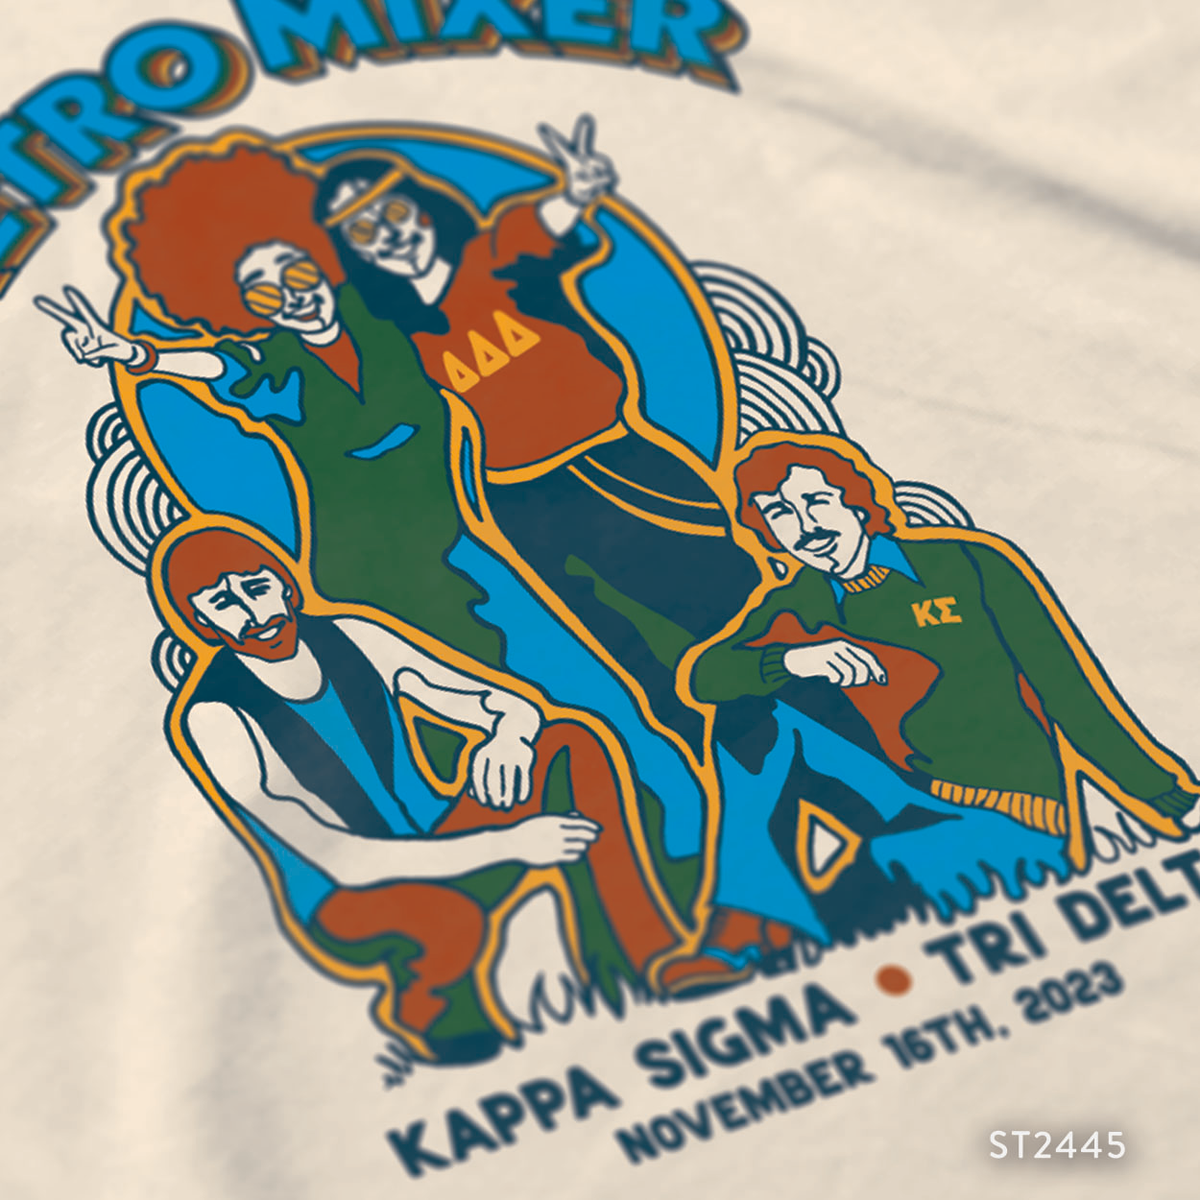 Kappa Sigma Retro Decades Mixer T-Shirt Design